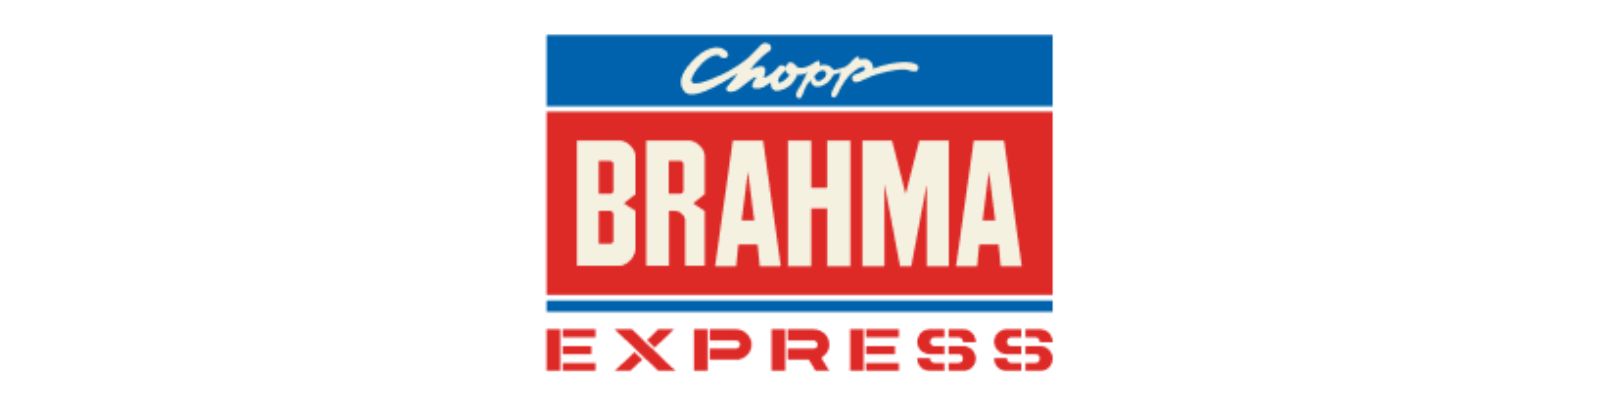 Chopp Brahma Express é confiável? Saiba a Verdade Agora Mesmo!